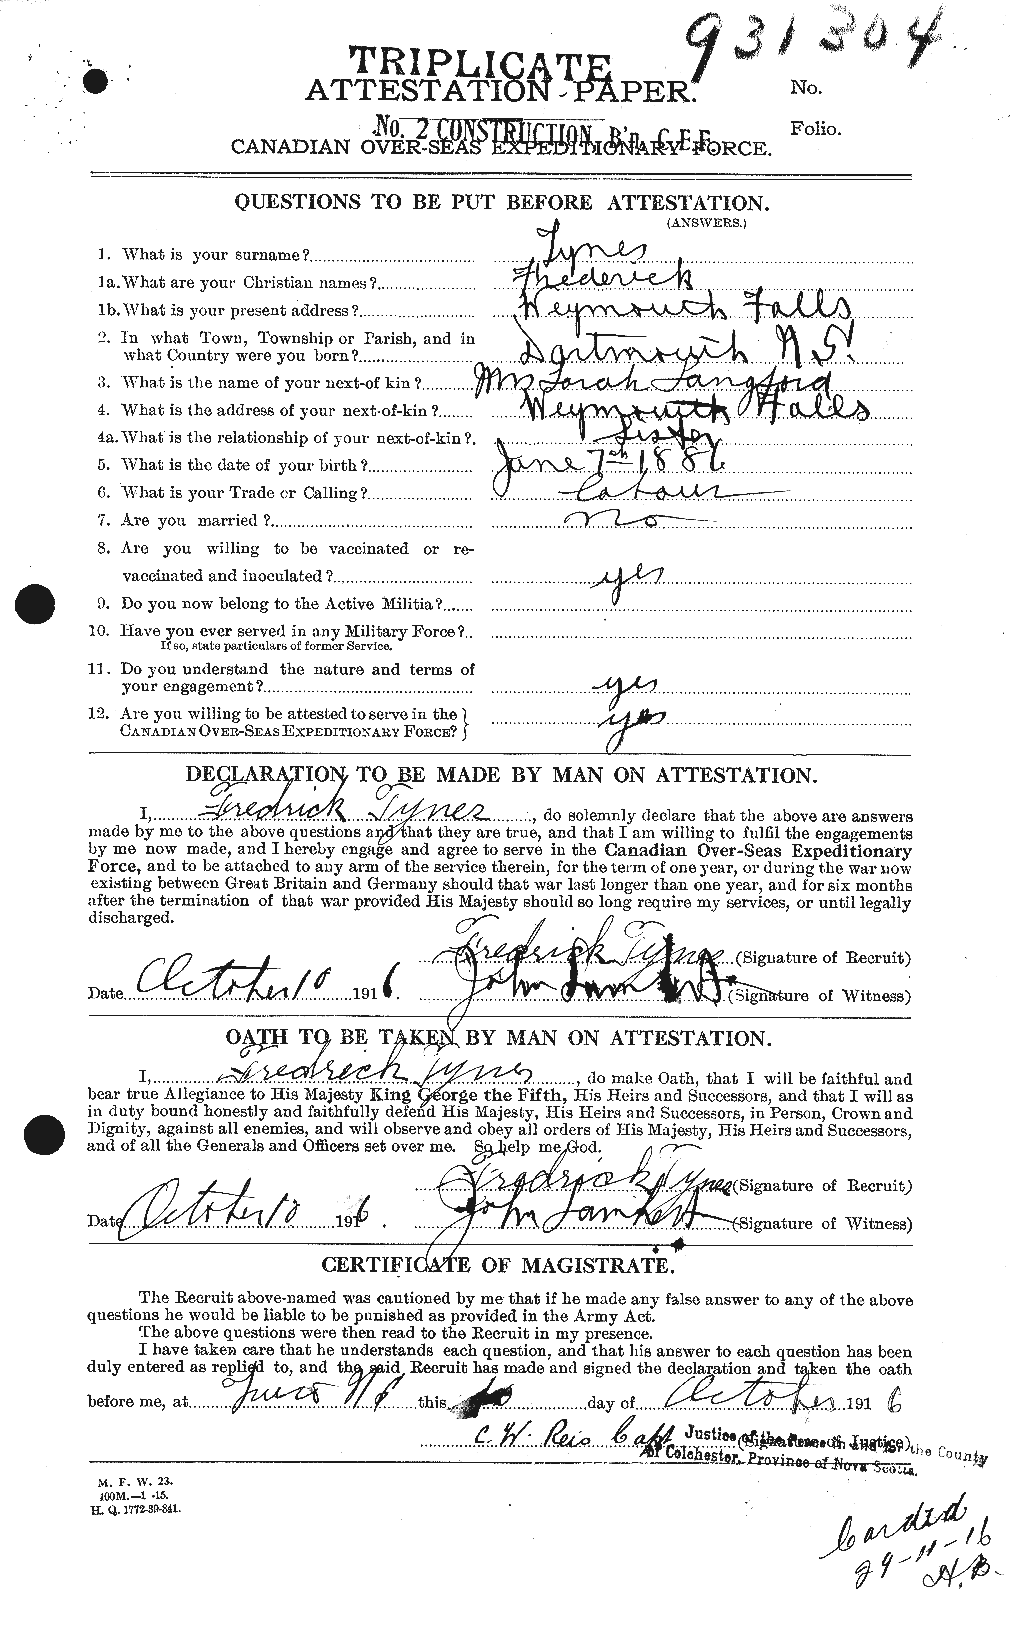 Dossiers du Personnel de la Première Guerre mondiale - CEC 644536a